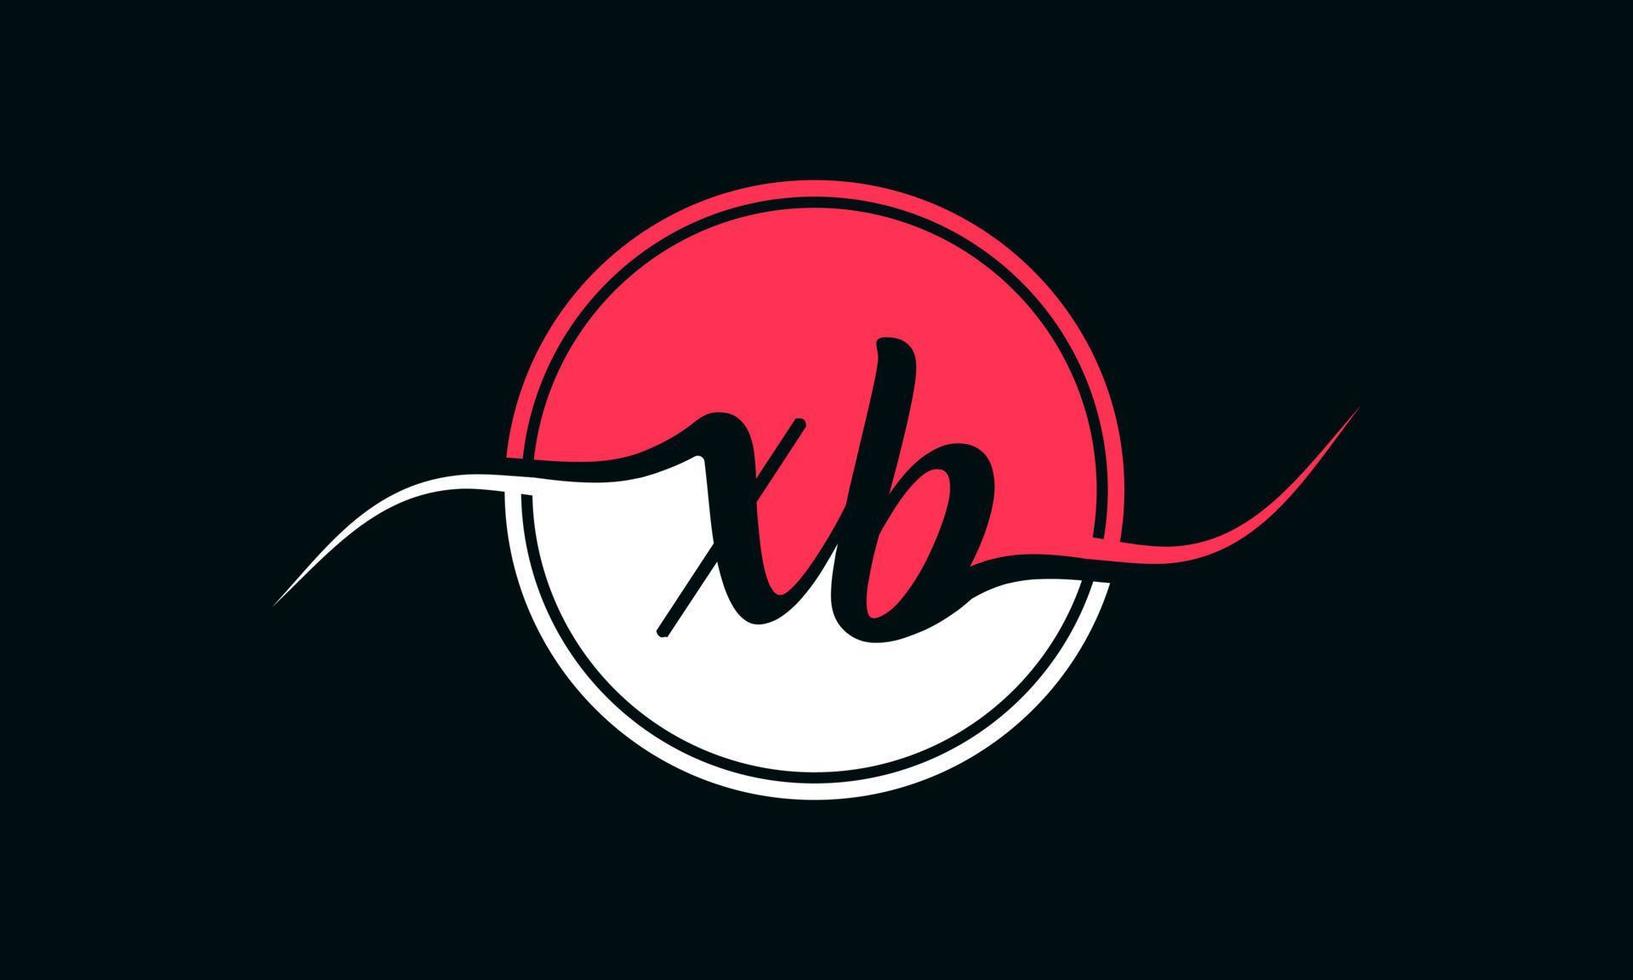 logotipo inicial da letra xb com círculo interno na cor branca e rosa. vetor profissional.